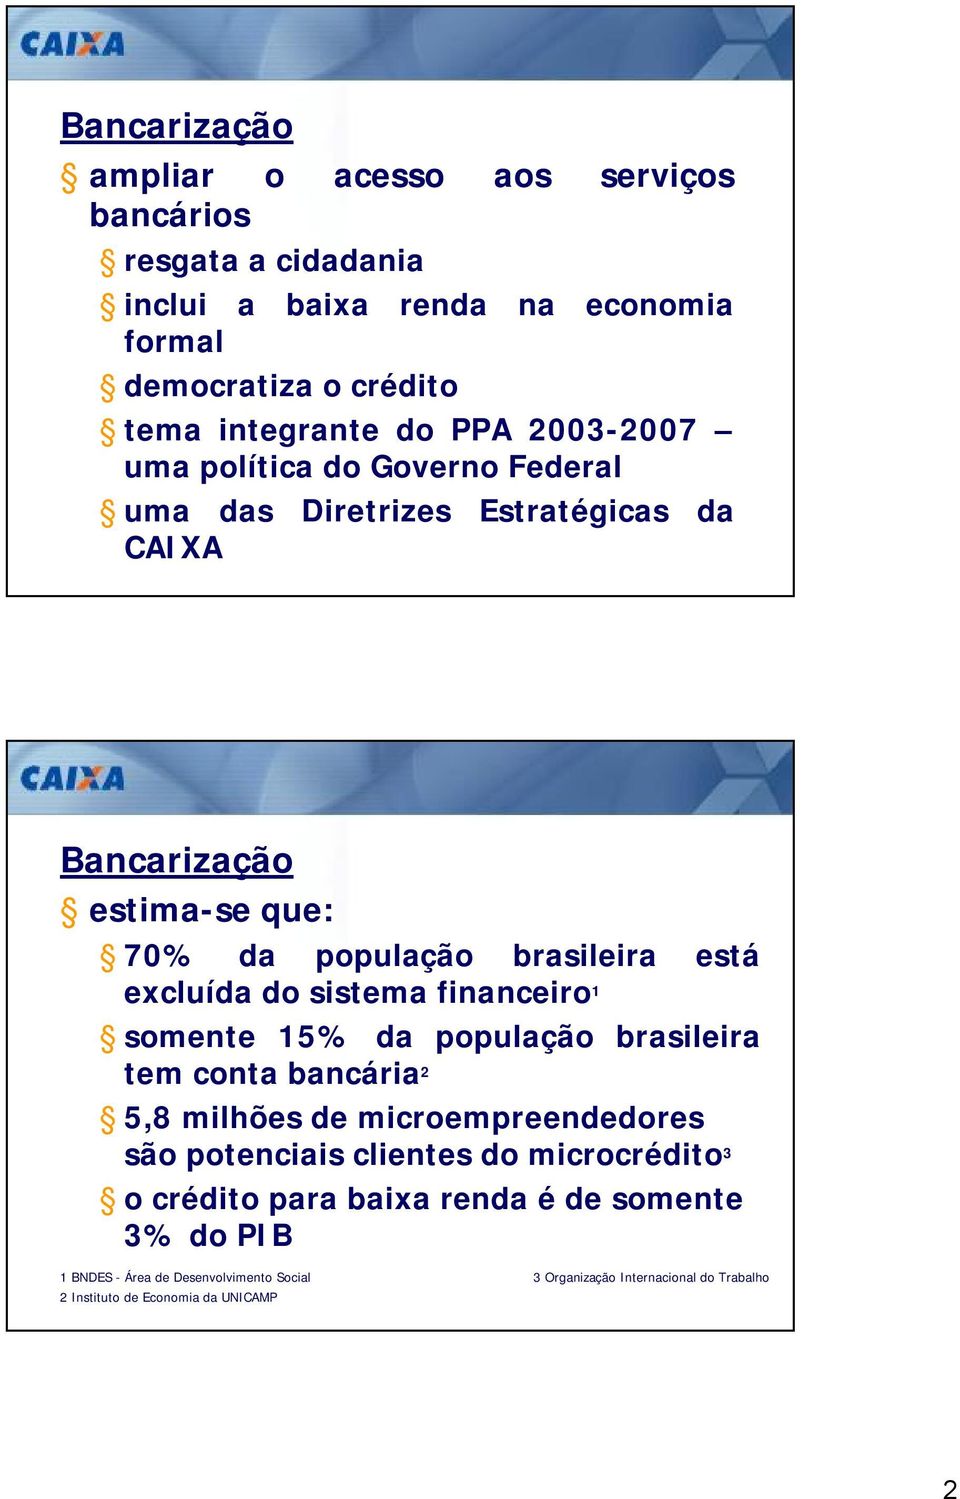 sistema financeiro 1 somente 15% da população brasileira tem conta bancária 2 5,8 milhões de microempreendedores são potenciais clientes do microcrédito 3 o